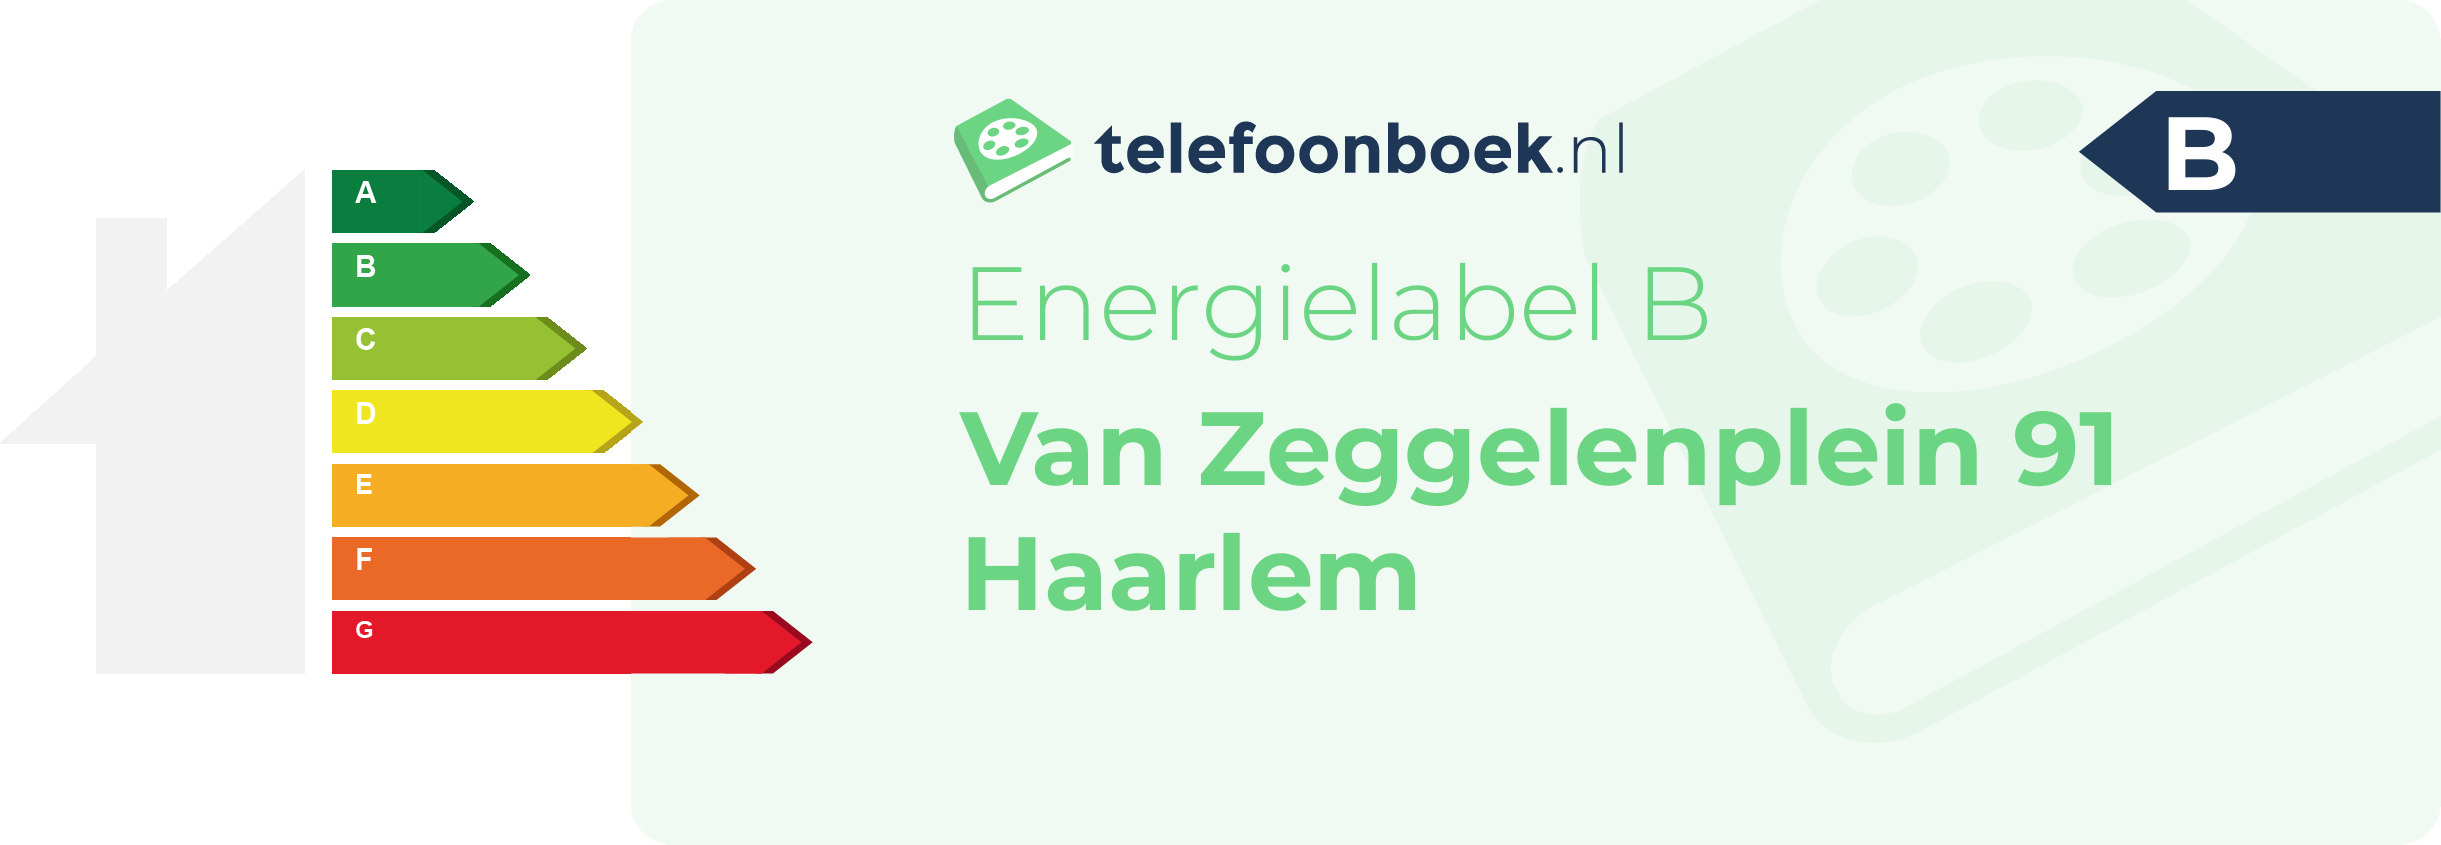 Energielabel Van Zeggelenplein 91 Haarlem